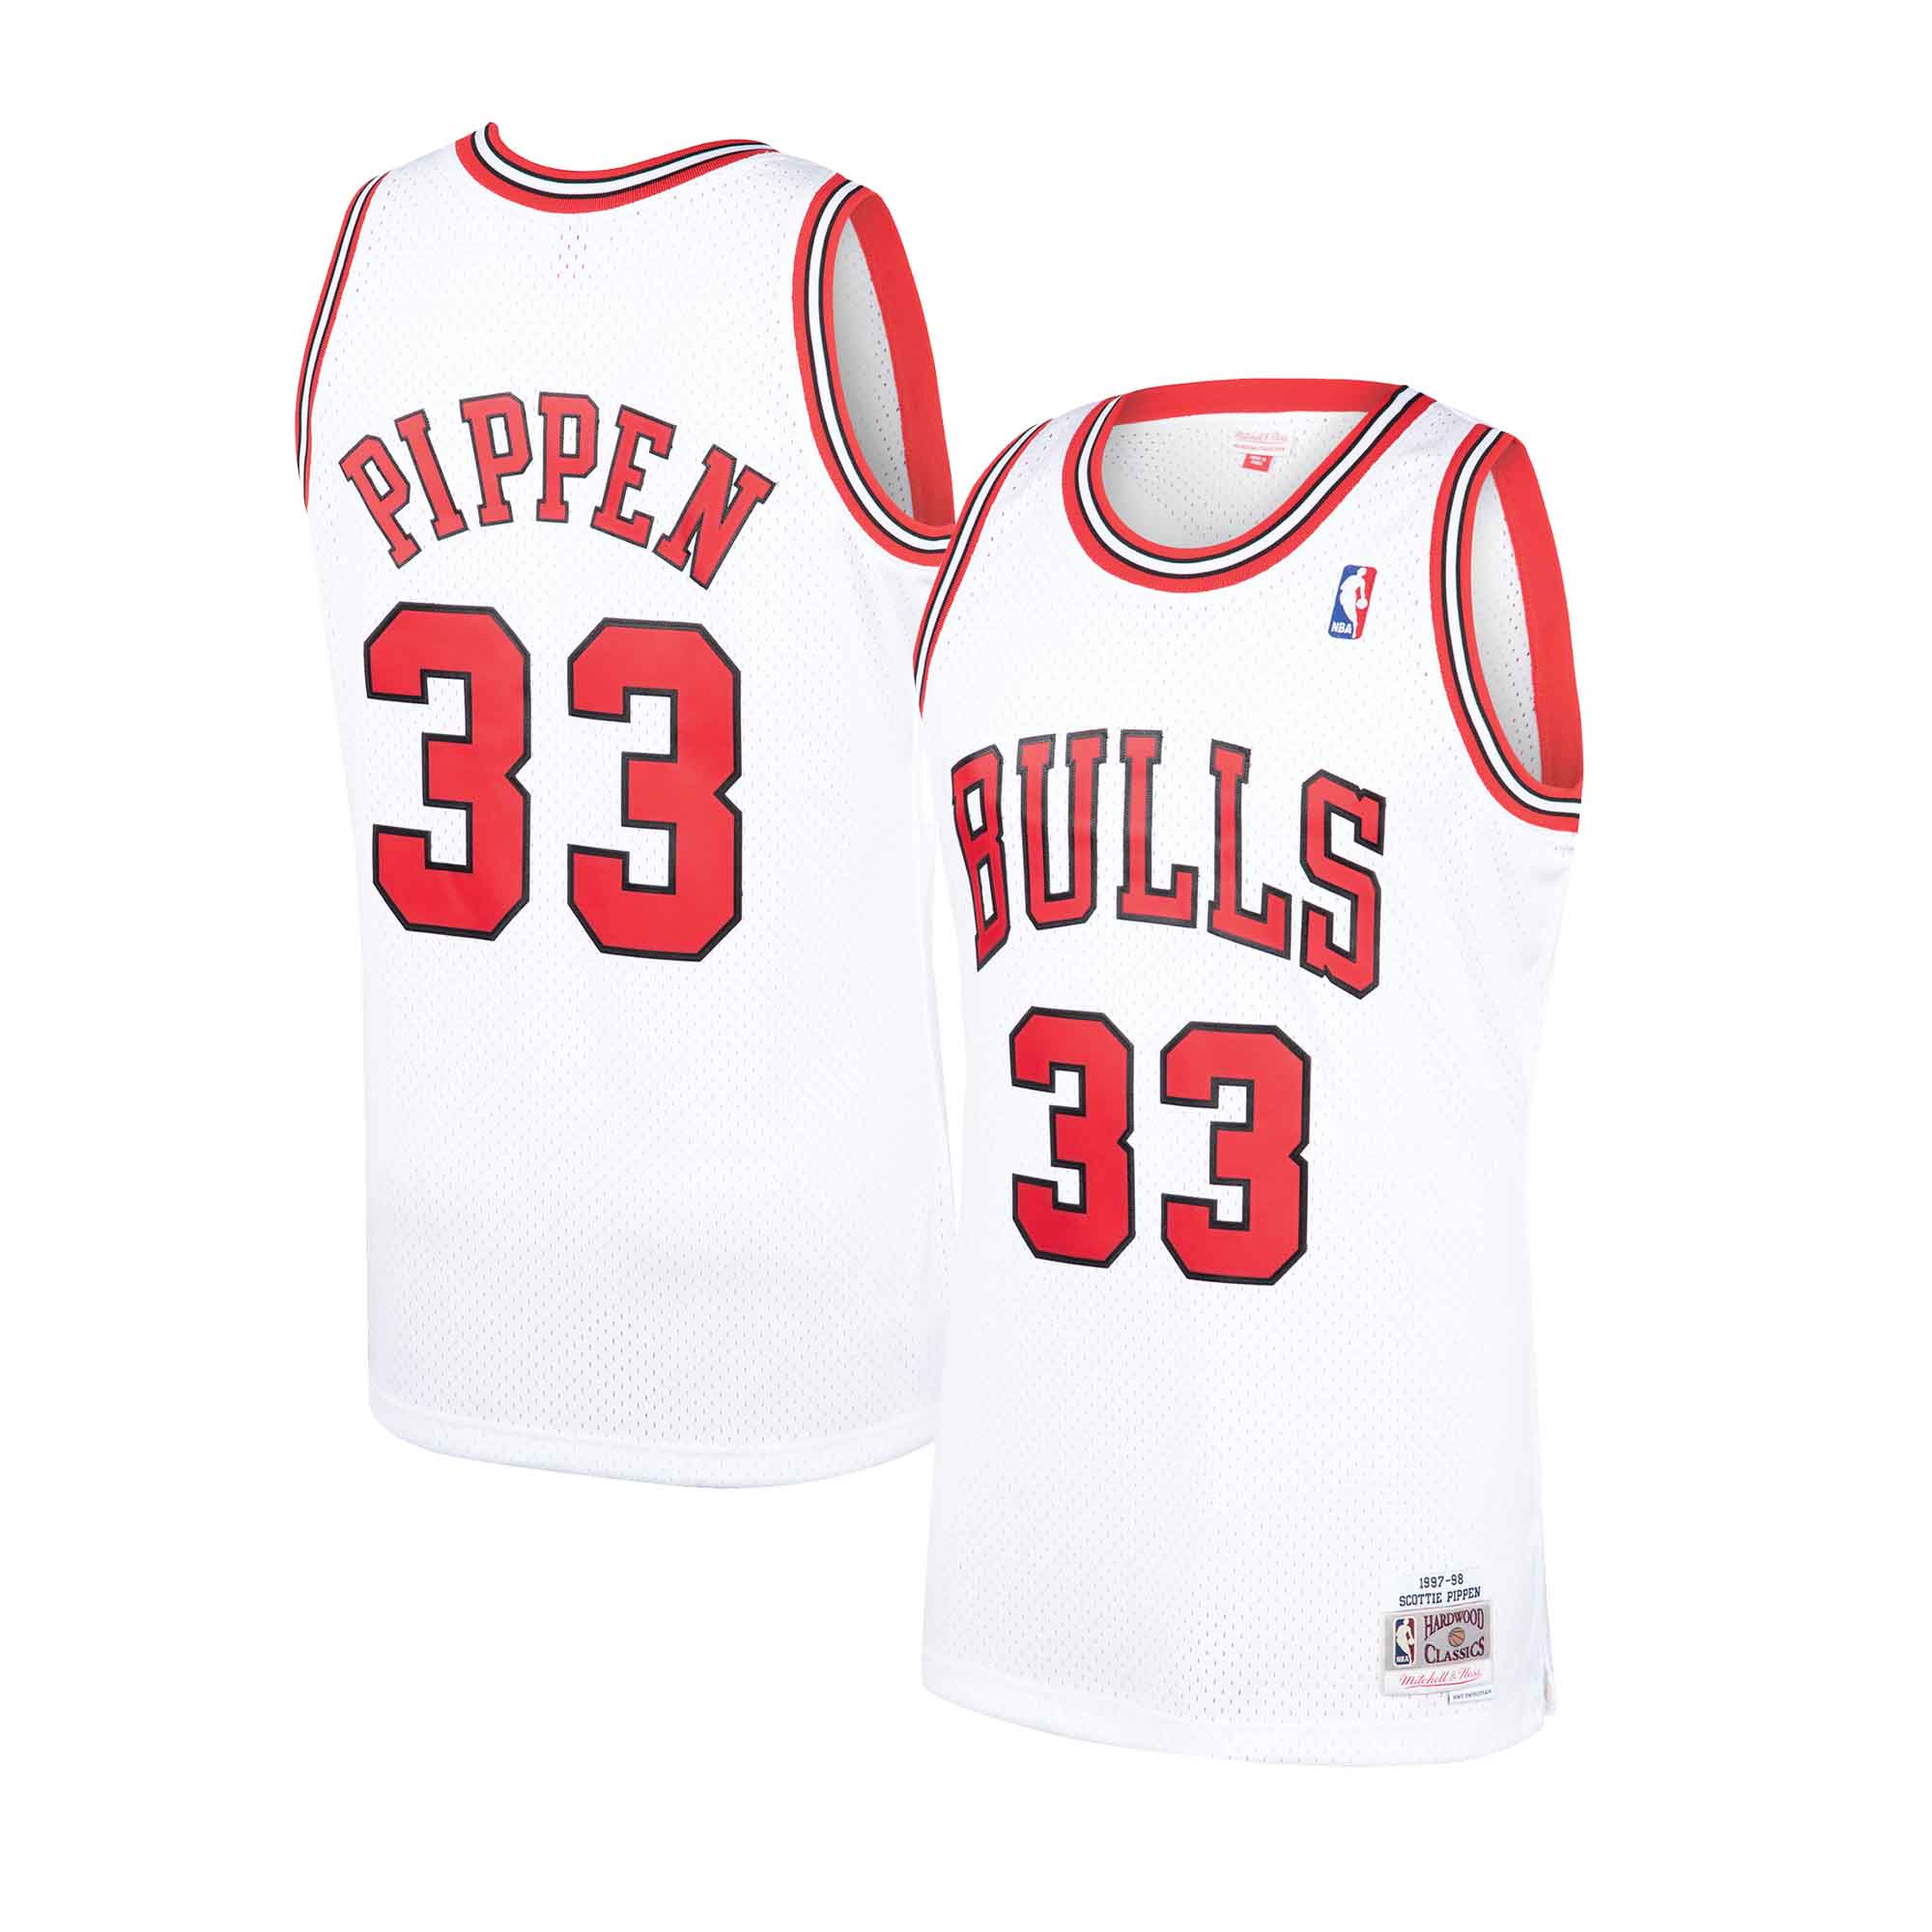 Scottie Pippen Jerseys, Scottie Pippen Shirts, Basketball Apparel, Scottie  Pippen Gear